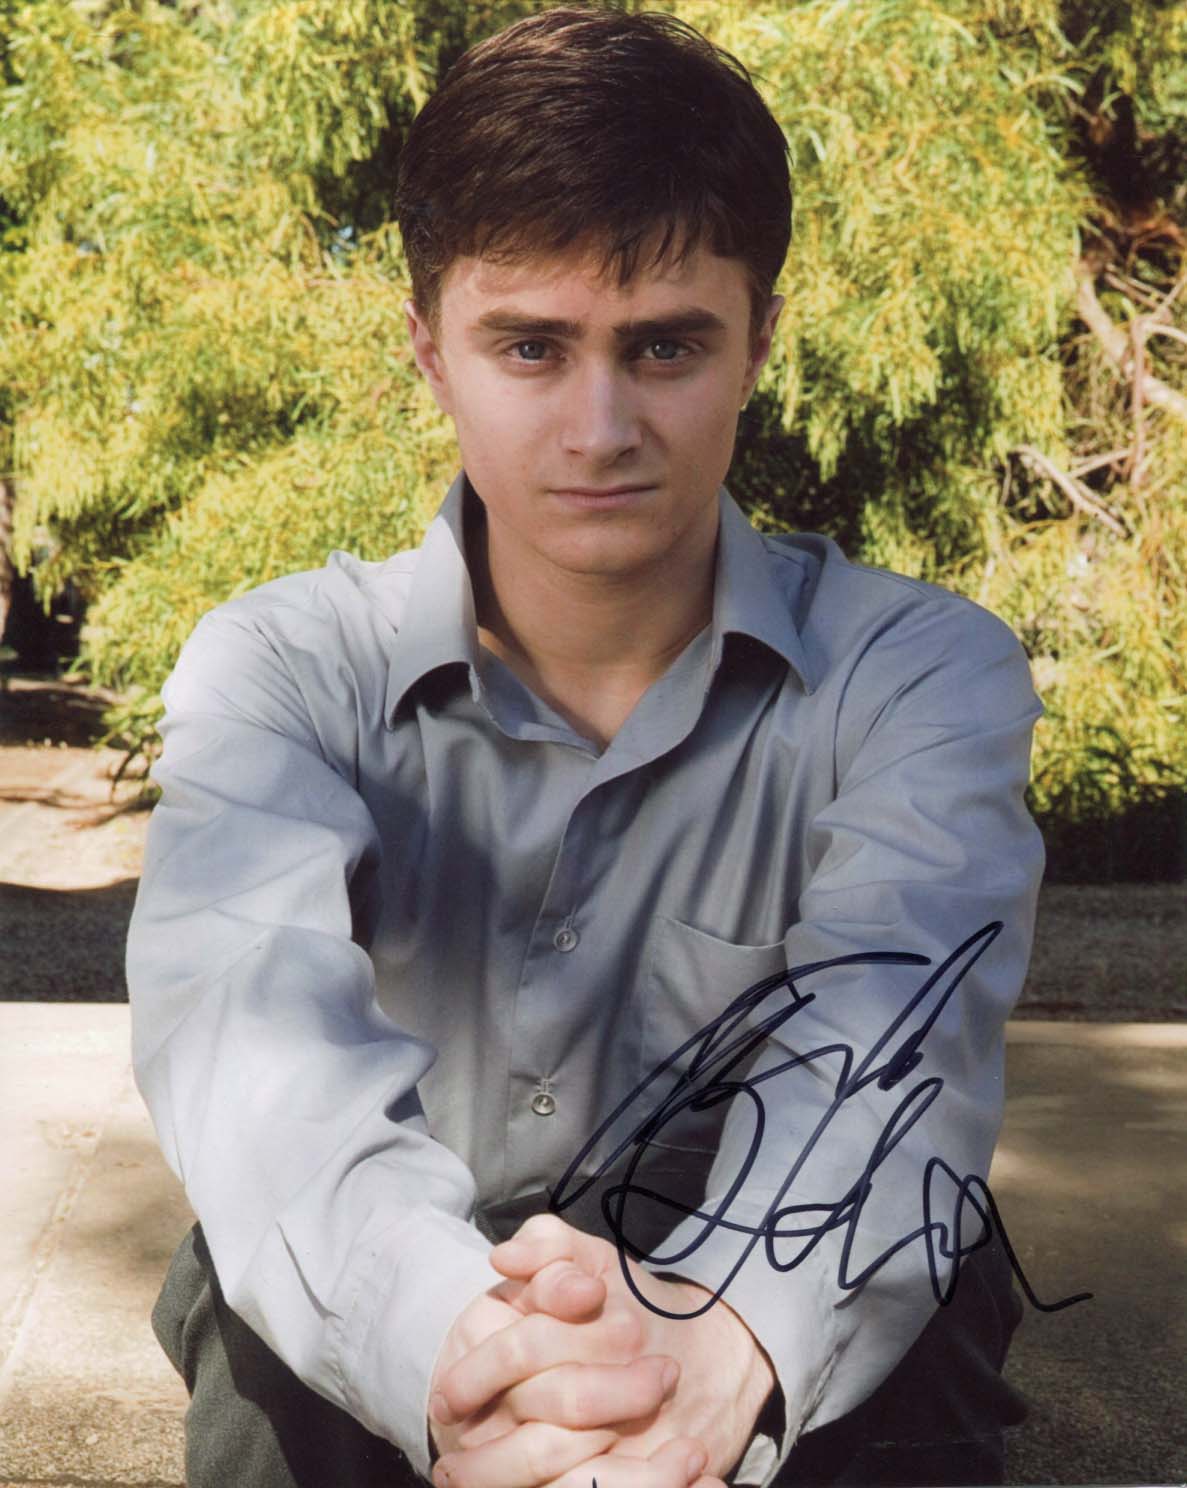 Daniel Radcliffe Autograph